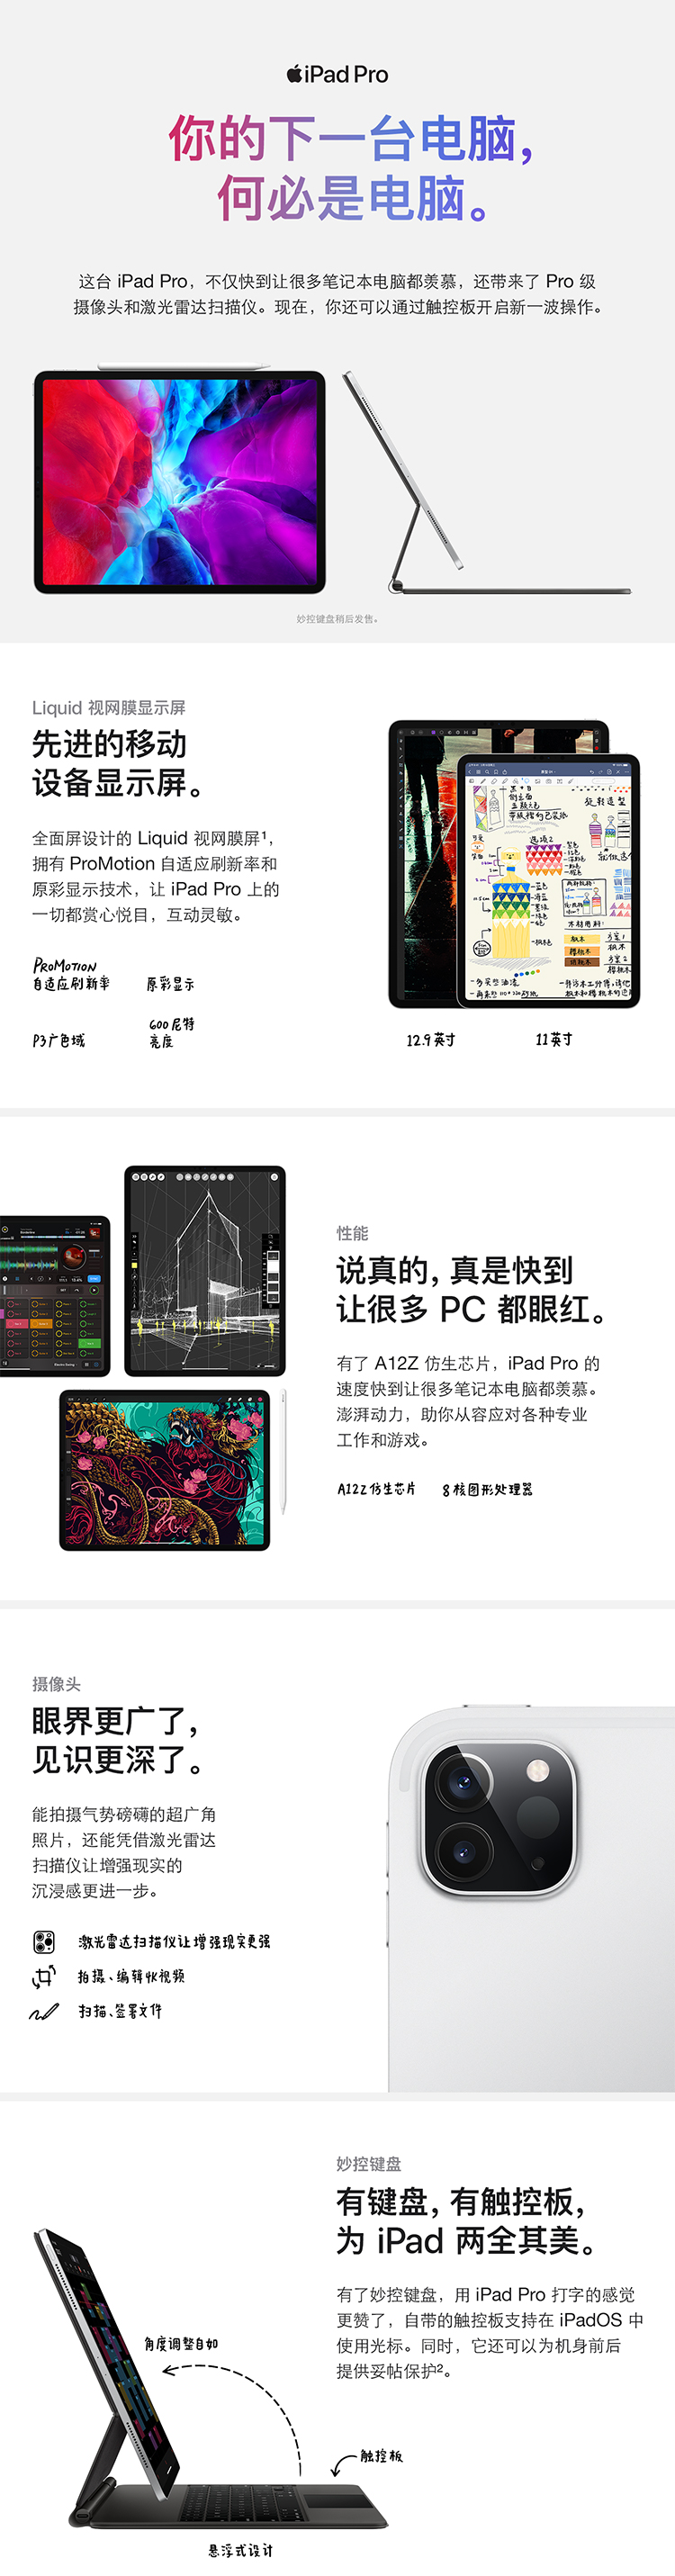 中山手机网 苹果(apple) apple ipad pro 12.9寸专卖